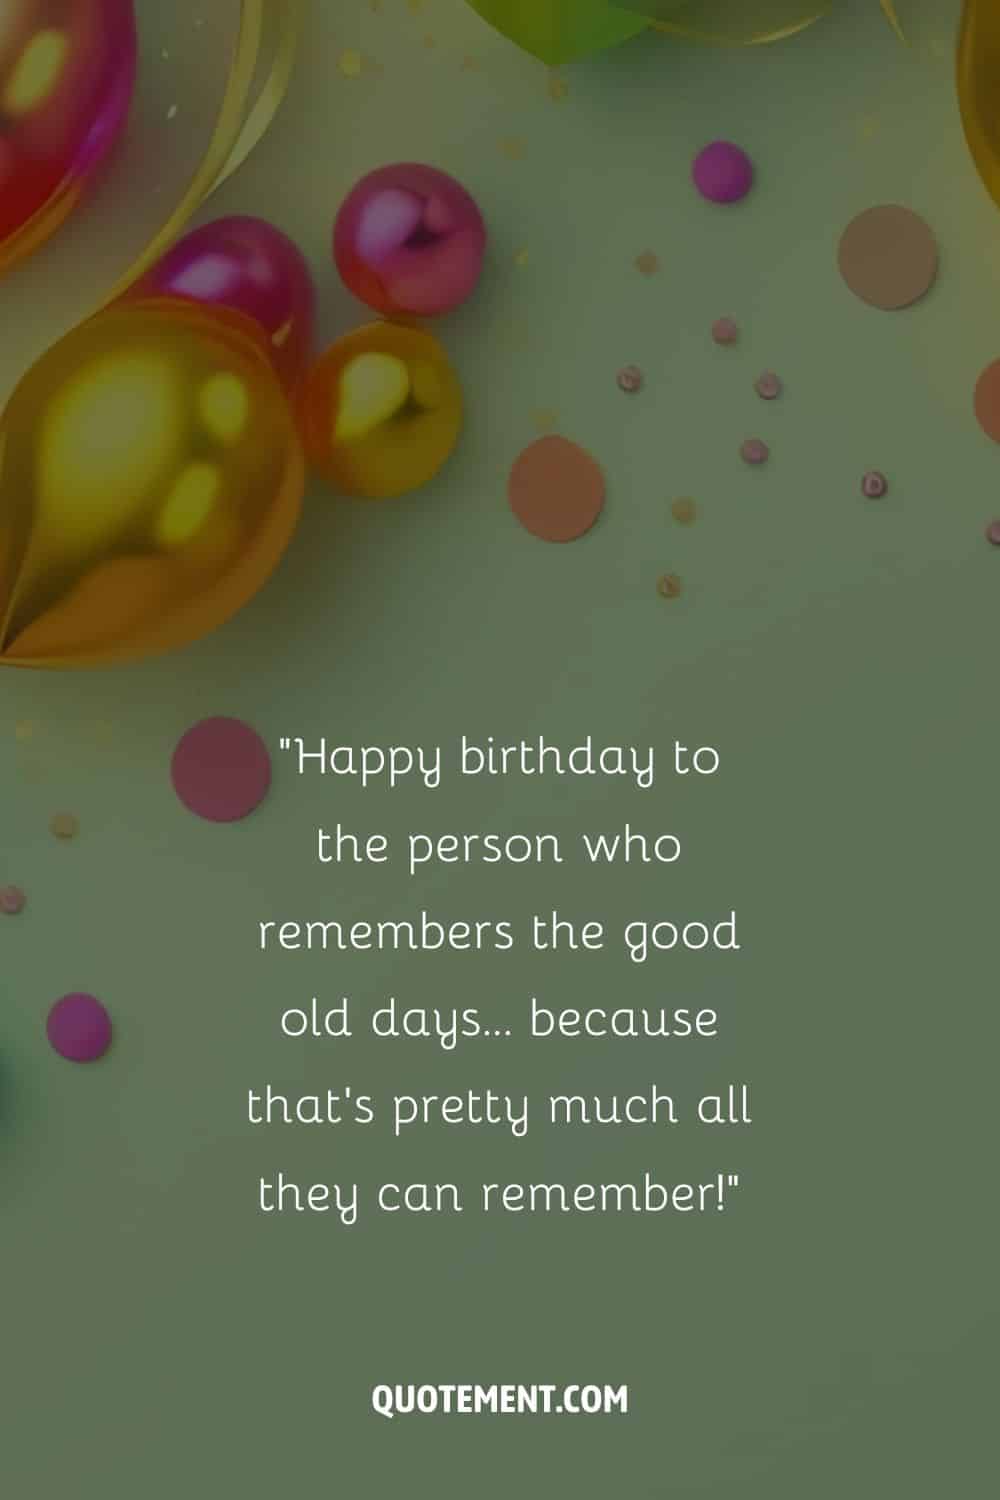 Mensaje divertido para su 97 cumpleaños y globos de colores junto con confeti en el fondo